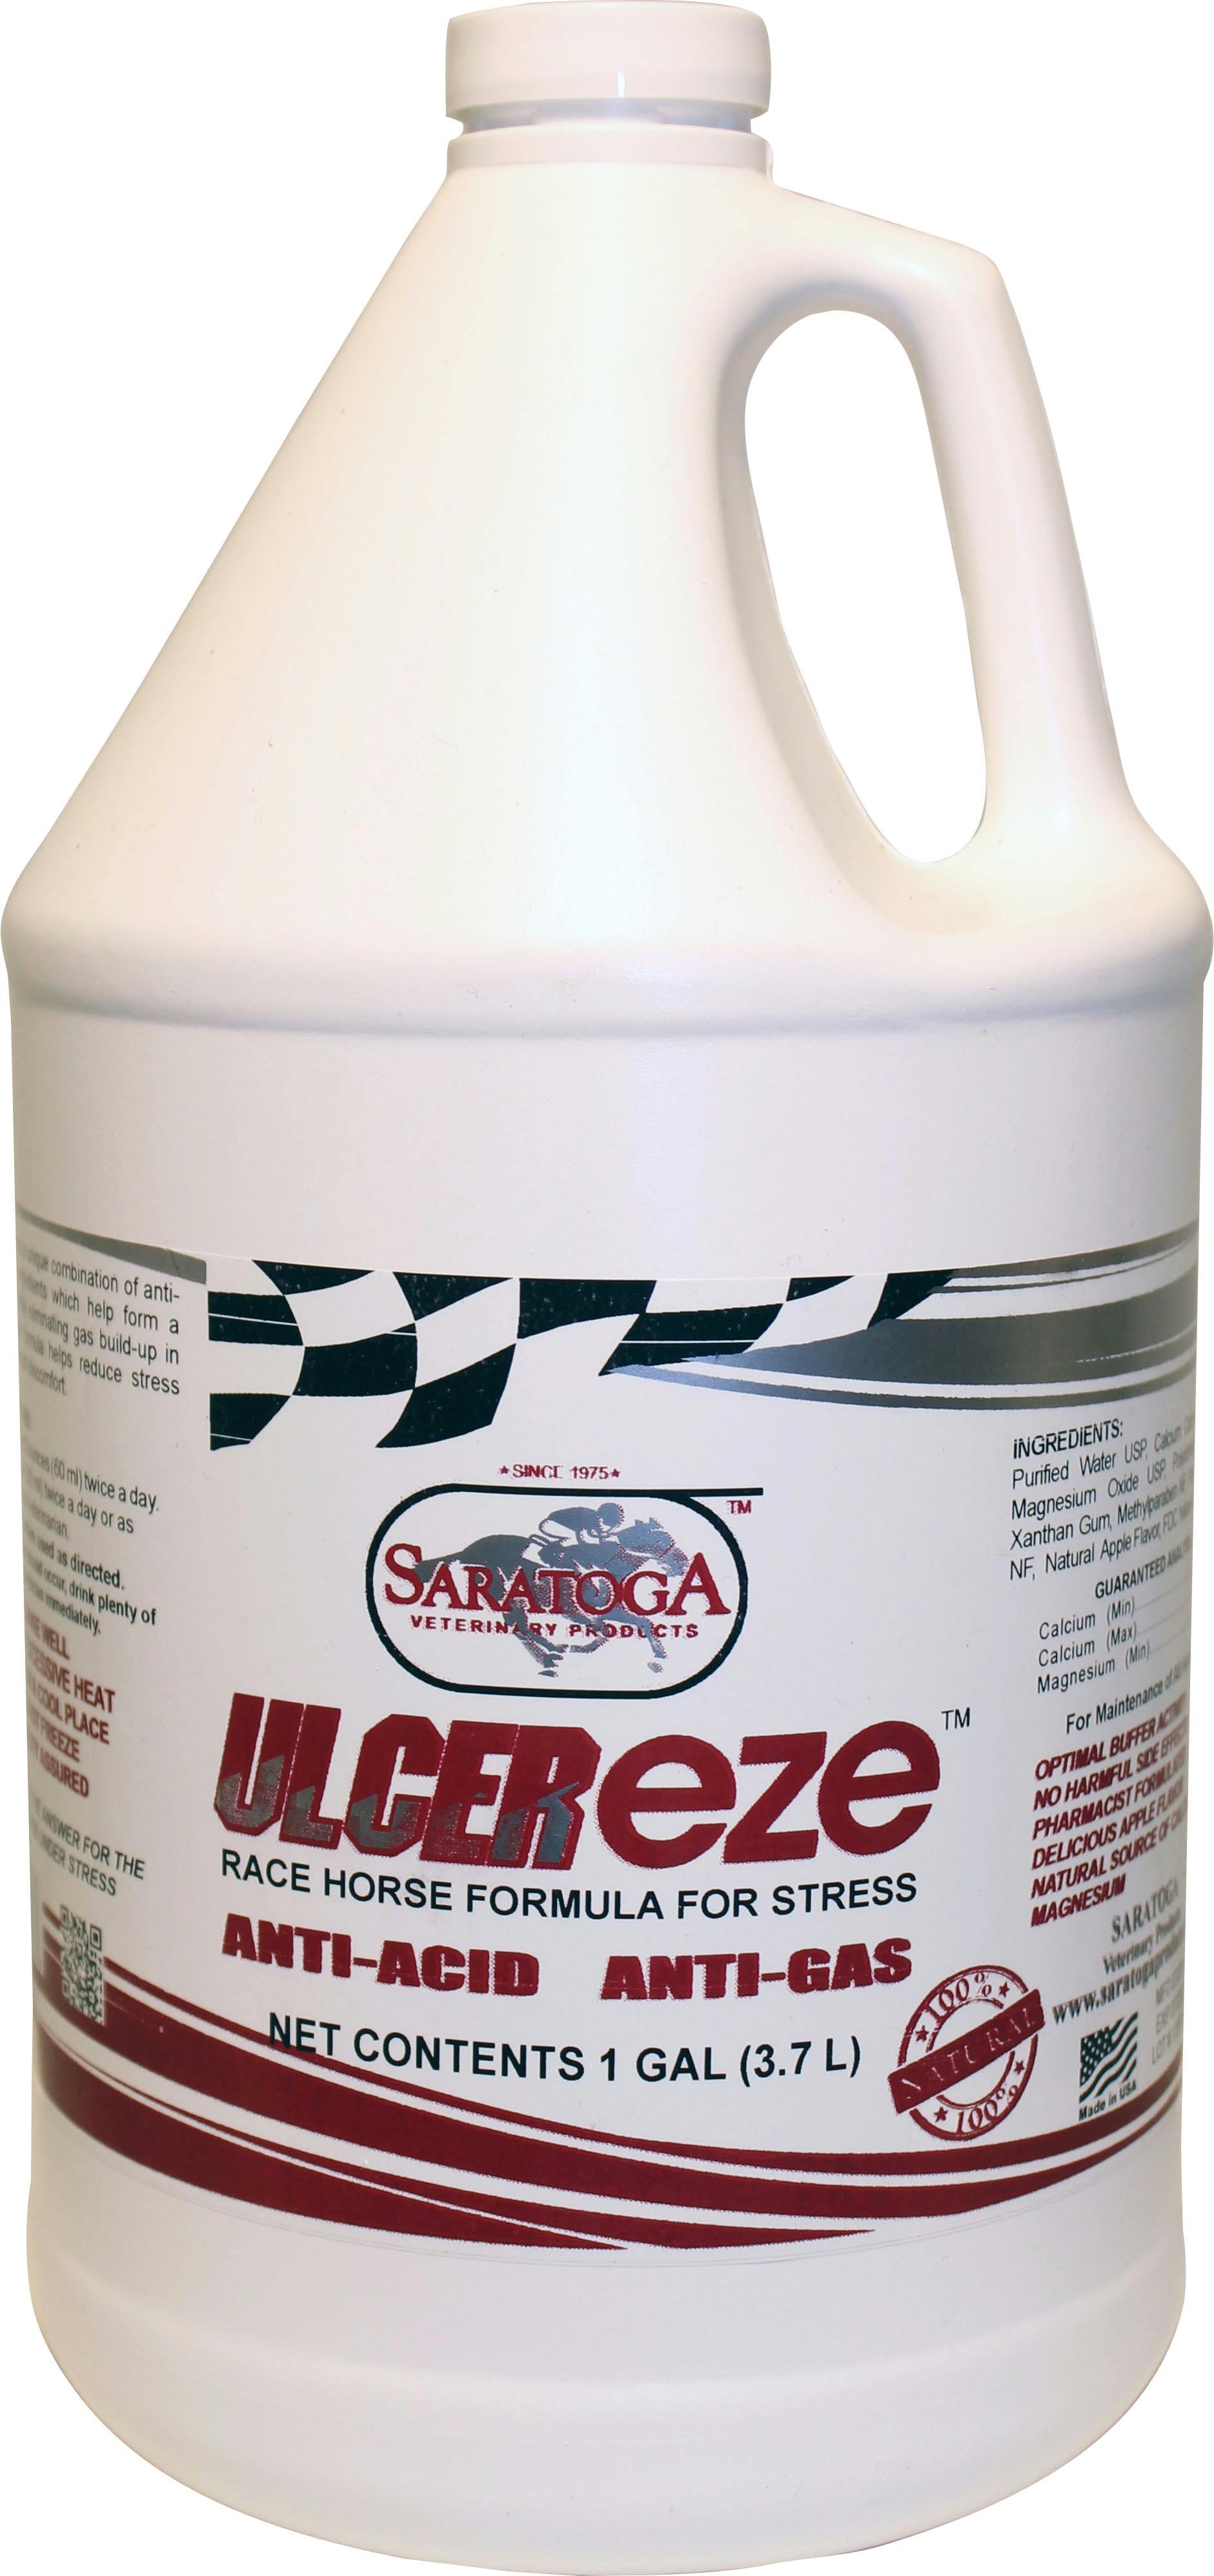 Ulcer-eze - aomega-products